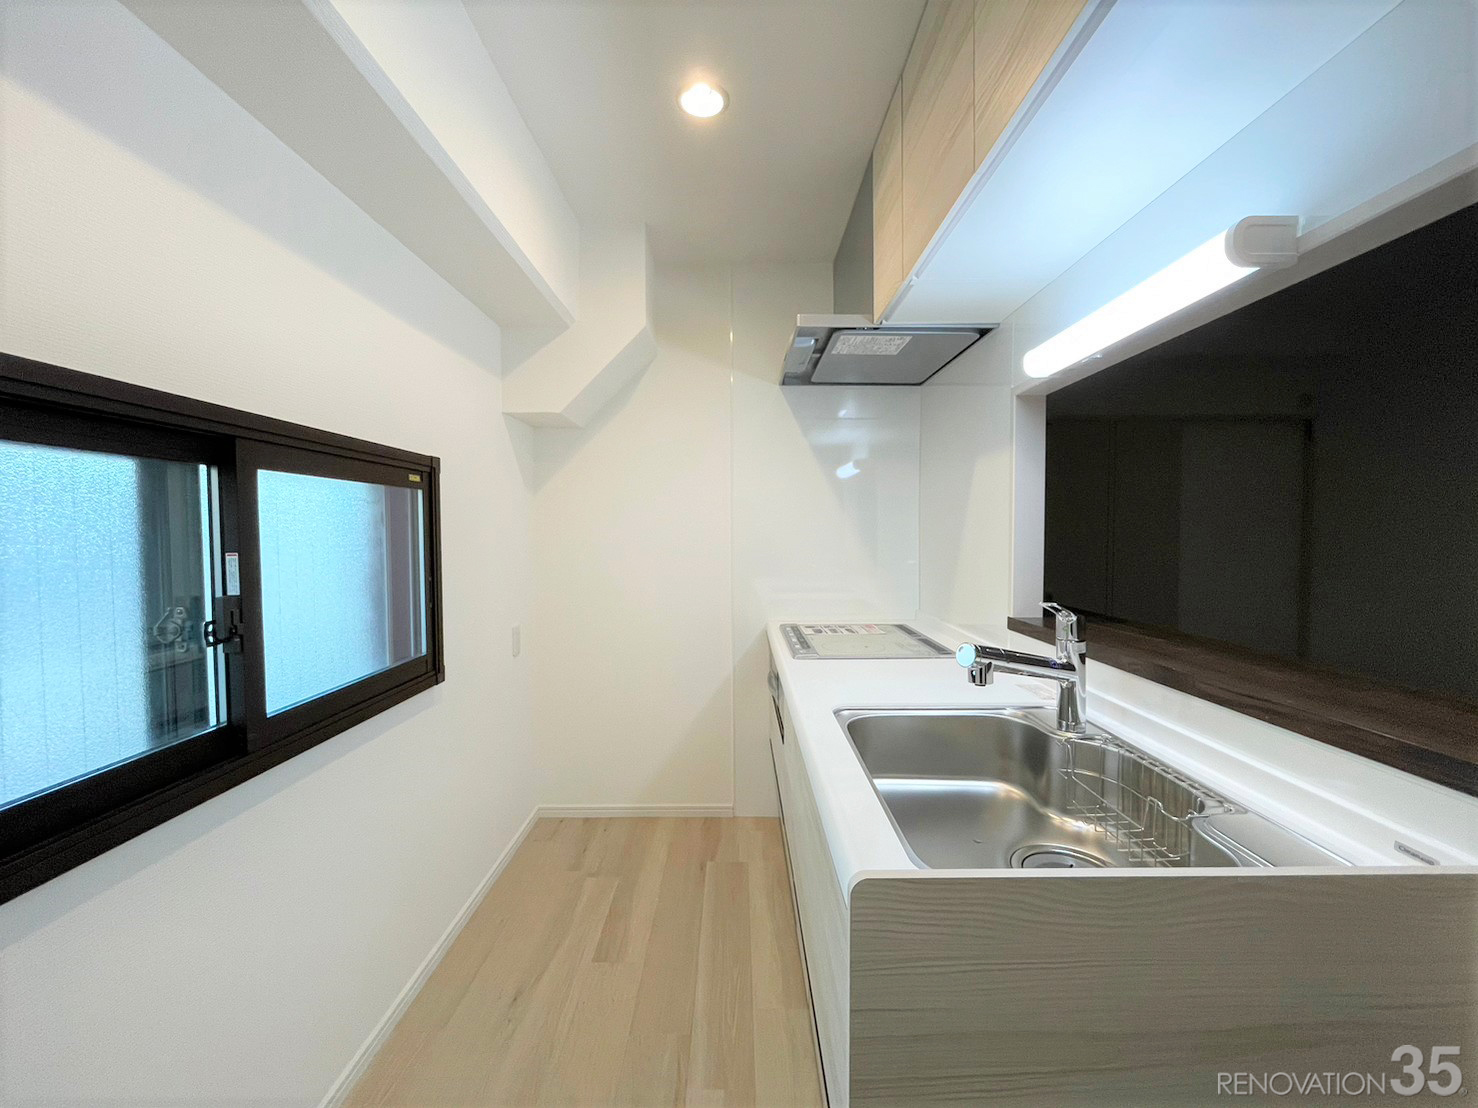 カウンターキッチン×シンプルデザイン、2LDKの空室対策リノベーション東京都豊島区、AFTER4